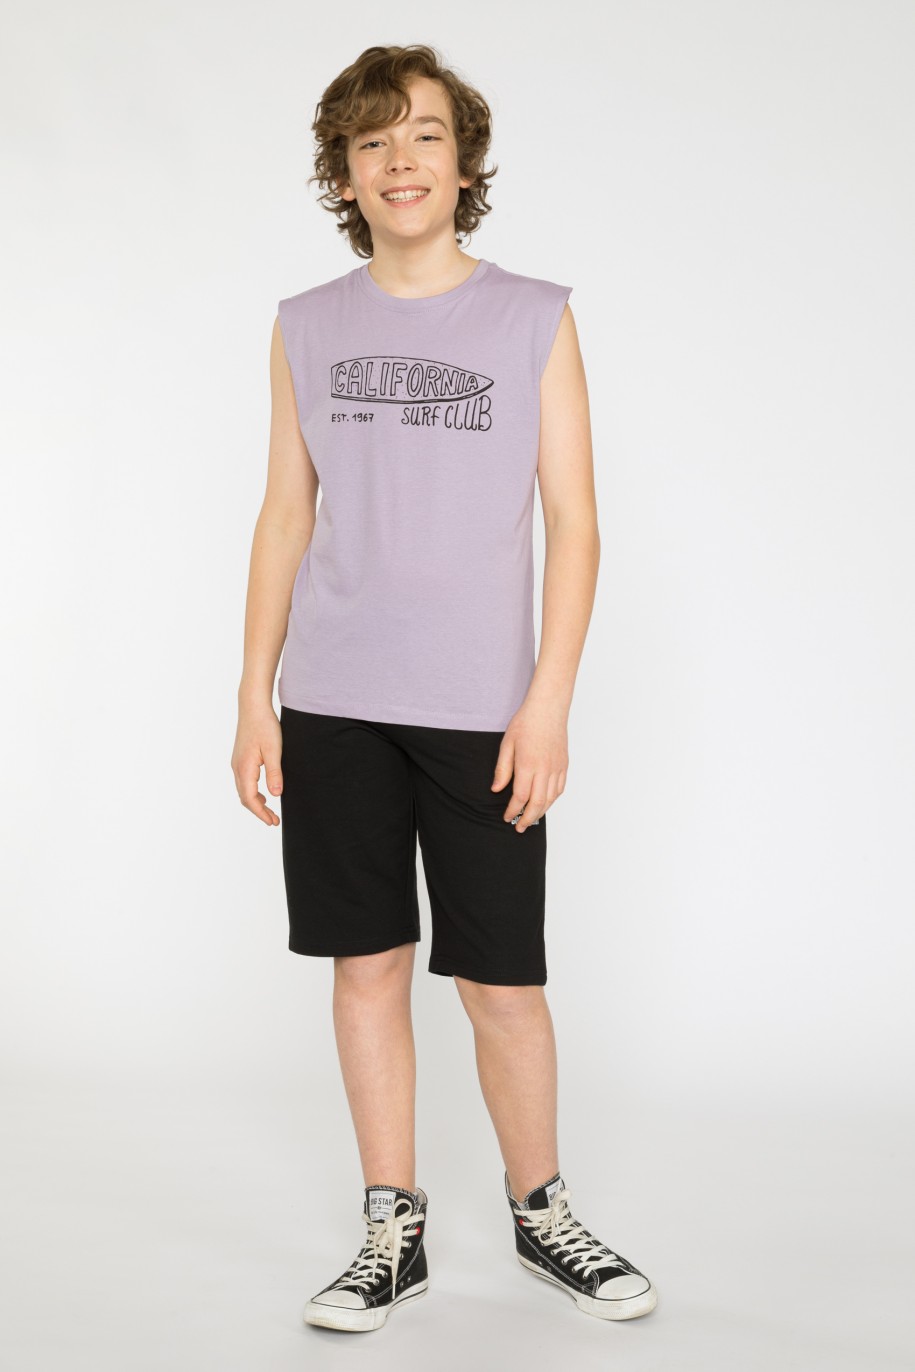 Fioletowy t-shirt bez rękawów CALIFORNIA SURF CLUB - 41419